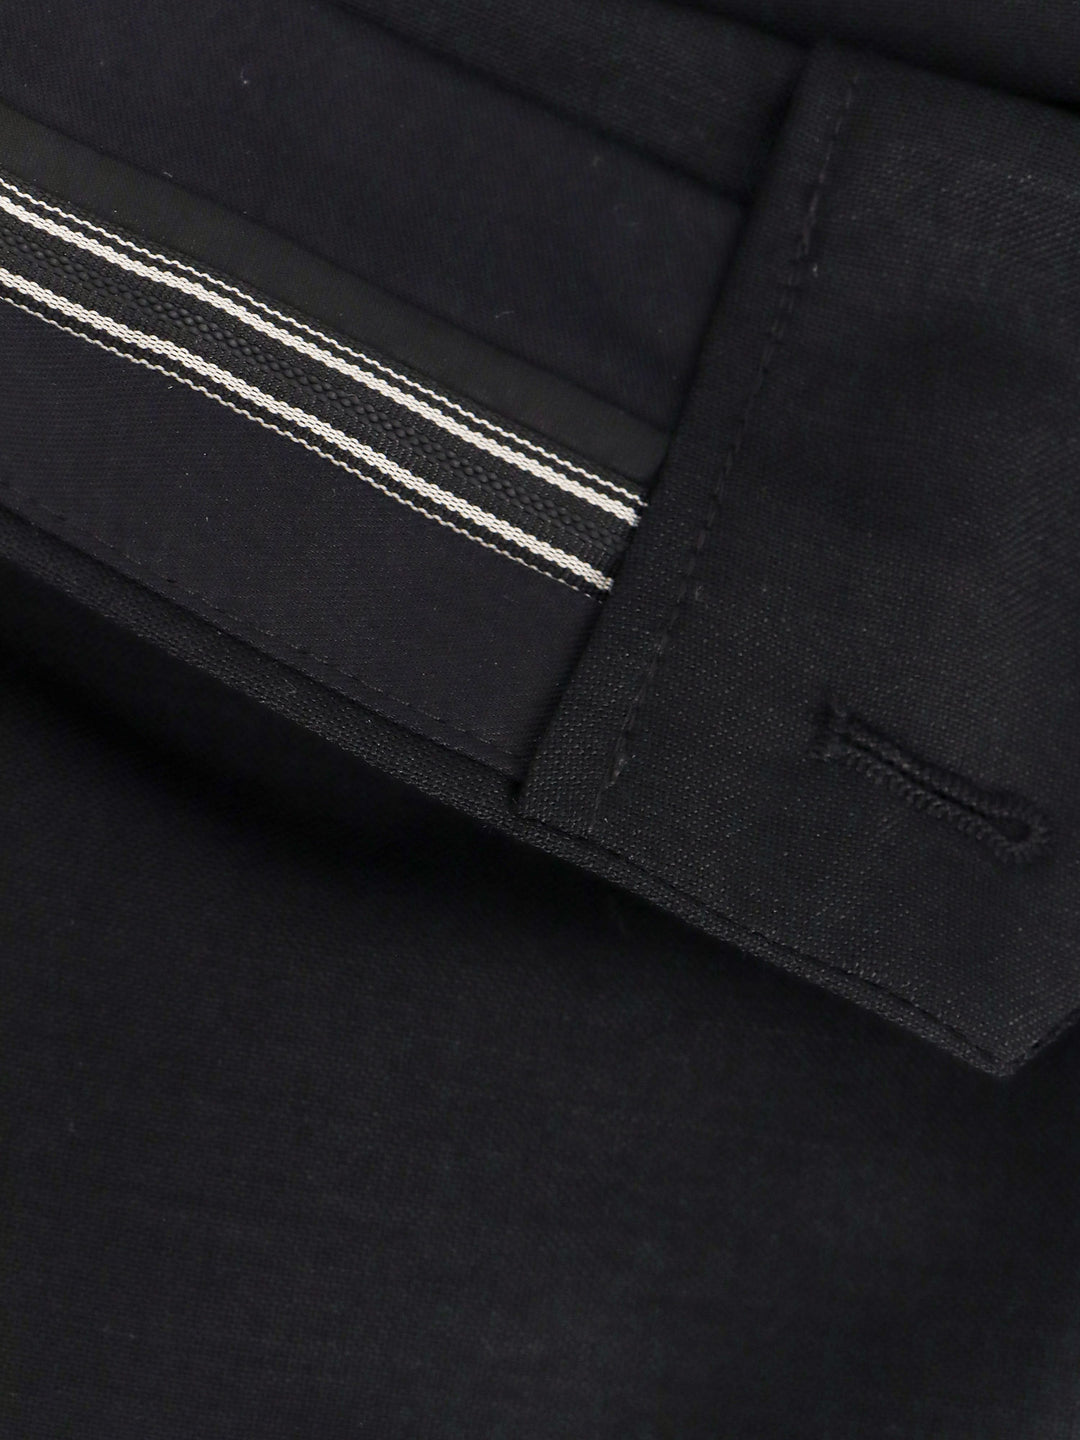 Shorts in lana mohair con dettaglio inside-out in vita con nastro logato Fendi Roma